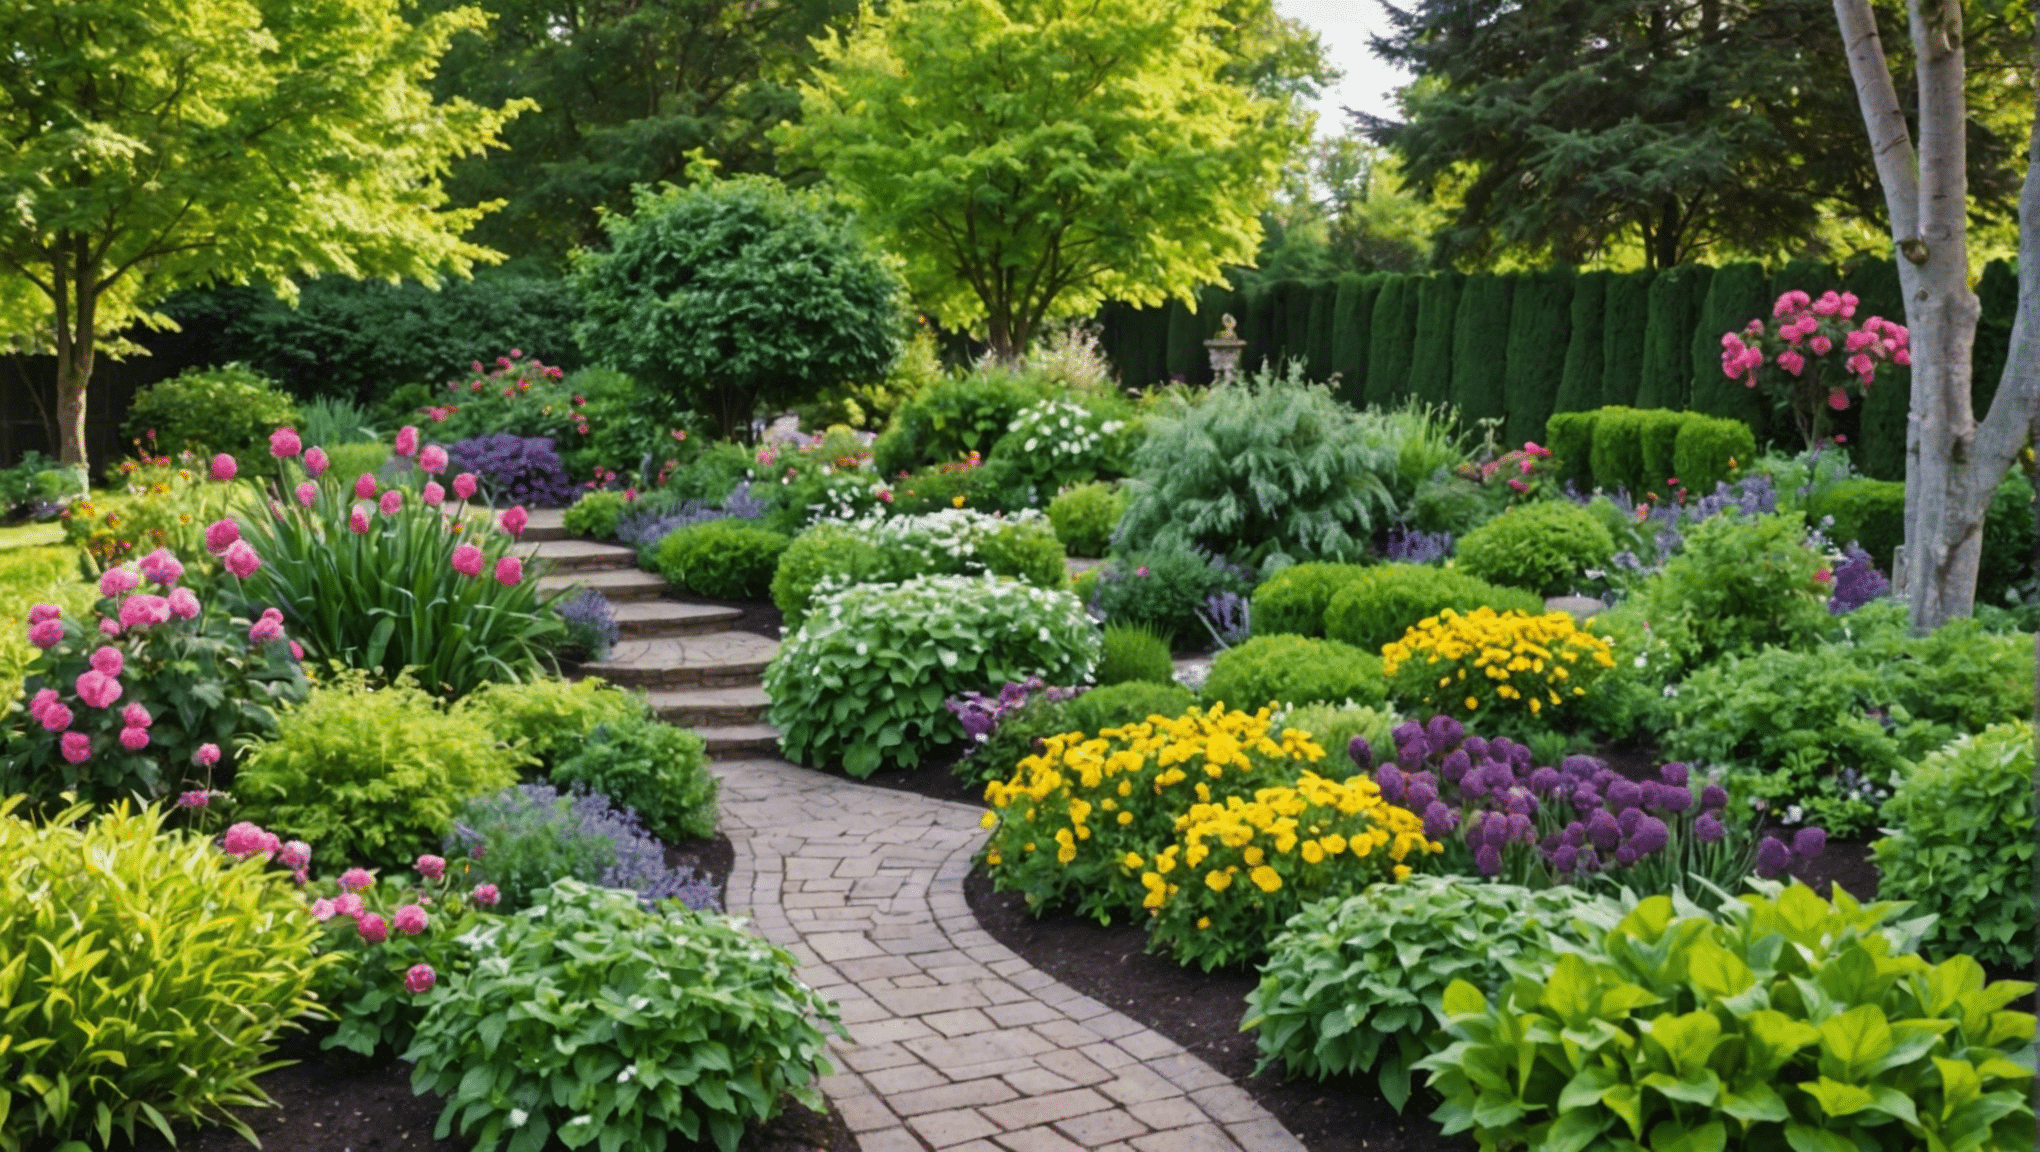 Descubra libros de jardinería esenciales para principiantes y comience su viaje en jardinería con consejos de expertos y sugerencias prácticas.